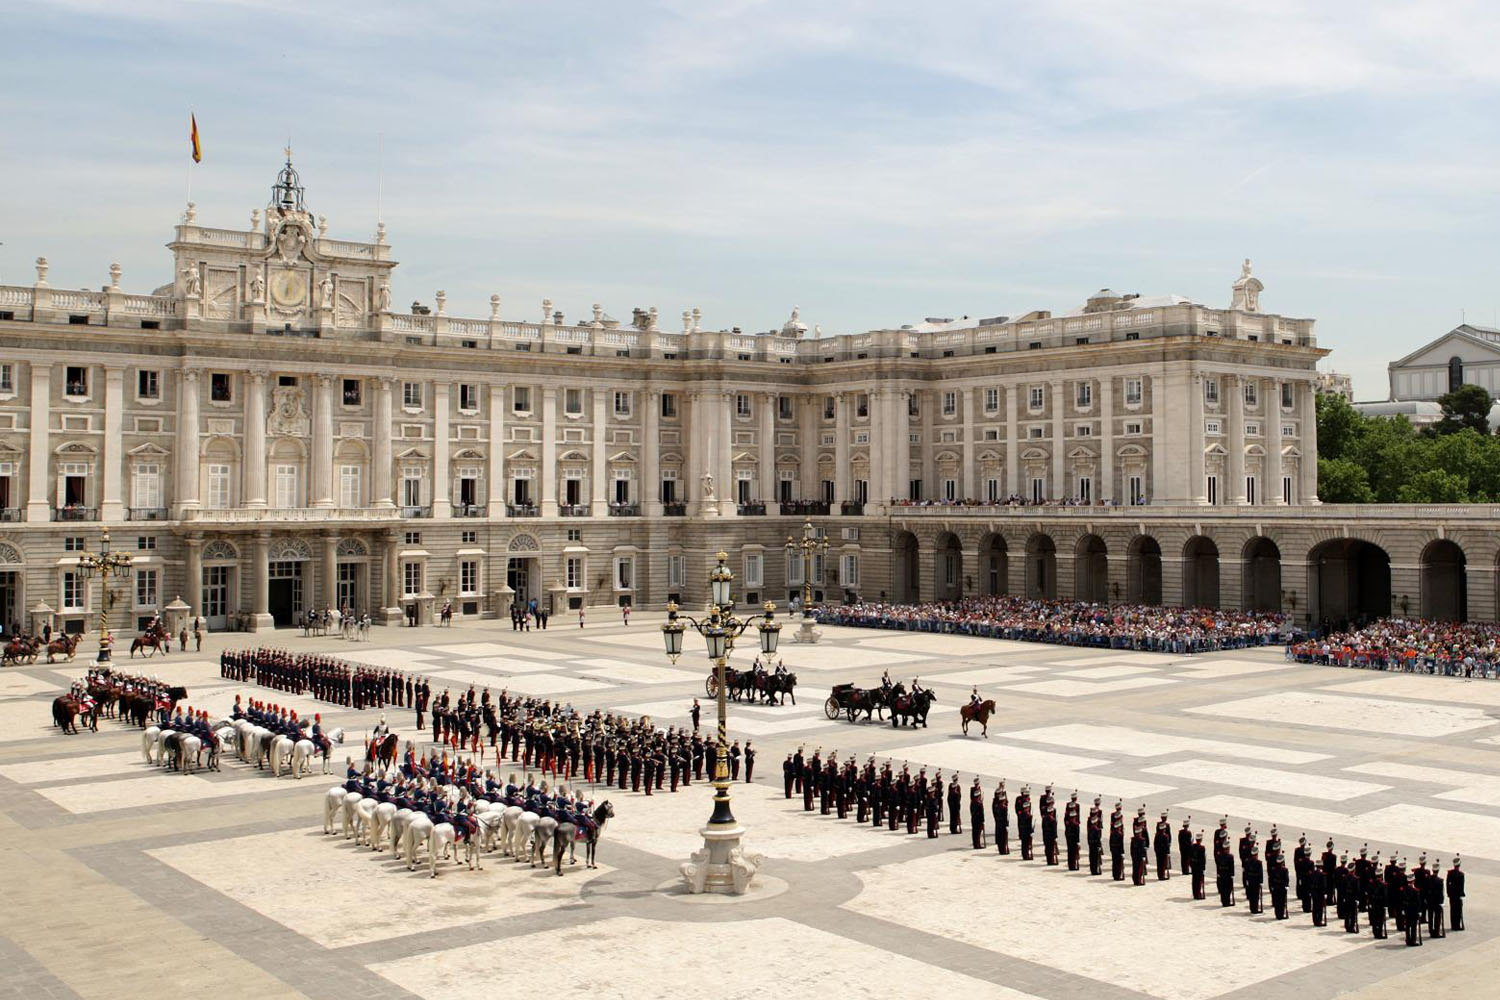 Relevo de Guardia y Relevo Solemne en el Palacio Real